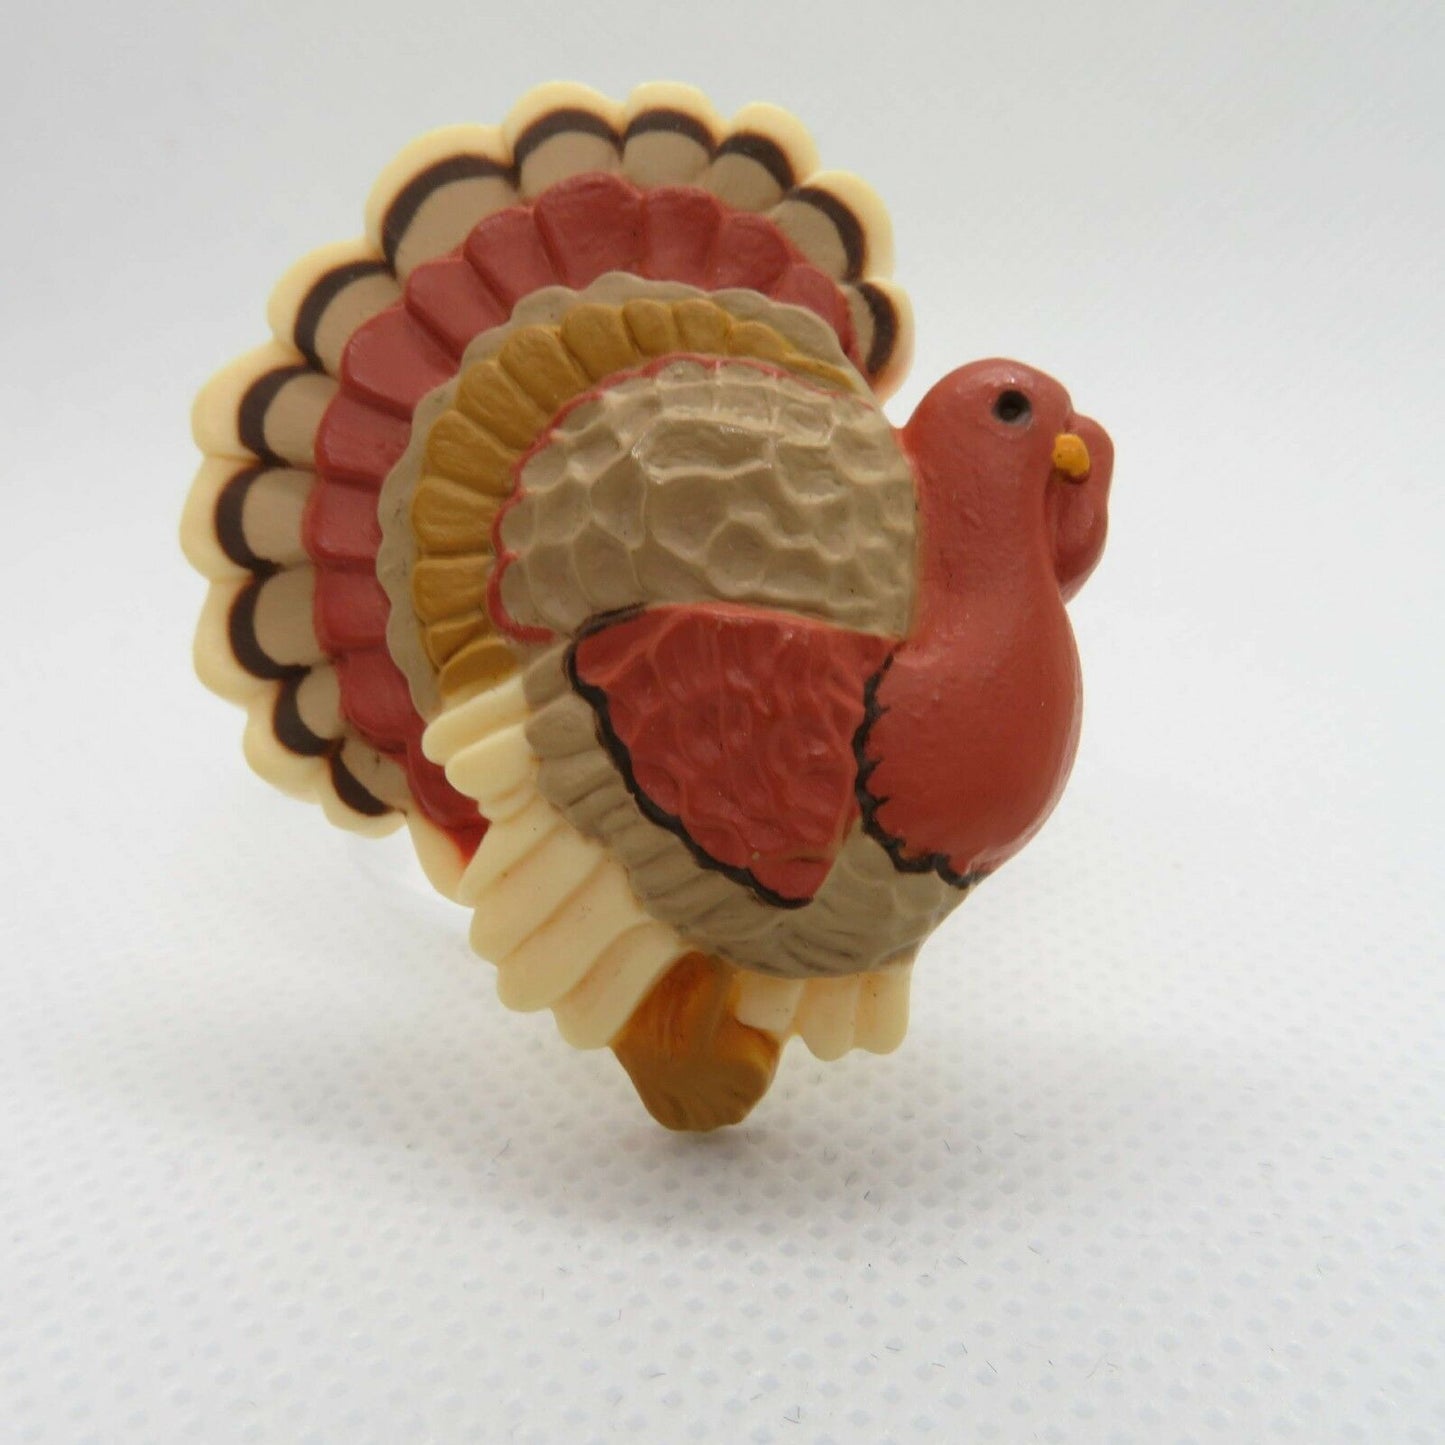 Vintage Turkey Pin Brooch Thanksgiving Fall Hallmark Plastic Holiday - At Grandma's Table